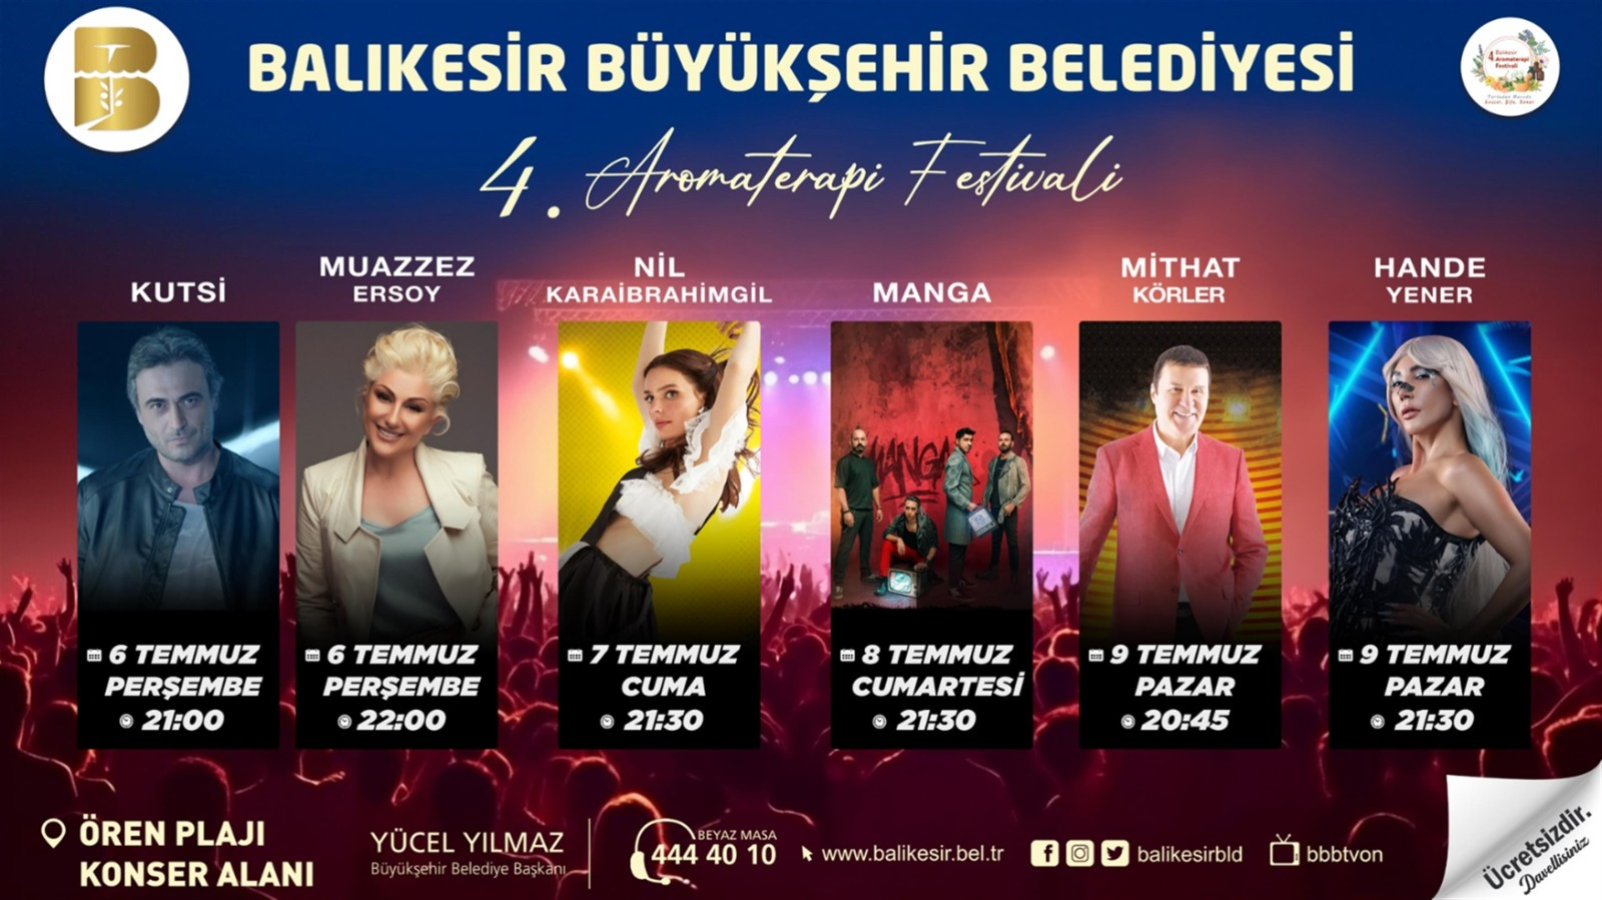 AKP'li Balıkesir Büyükşehir Belediyesi, Hande Yener'in konserini iptal etti